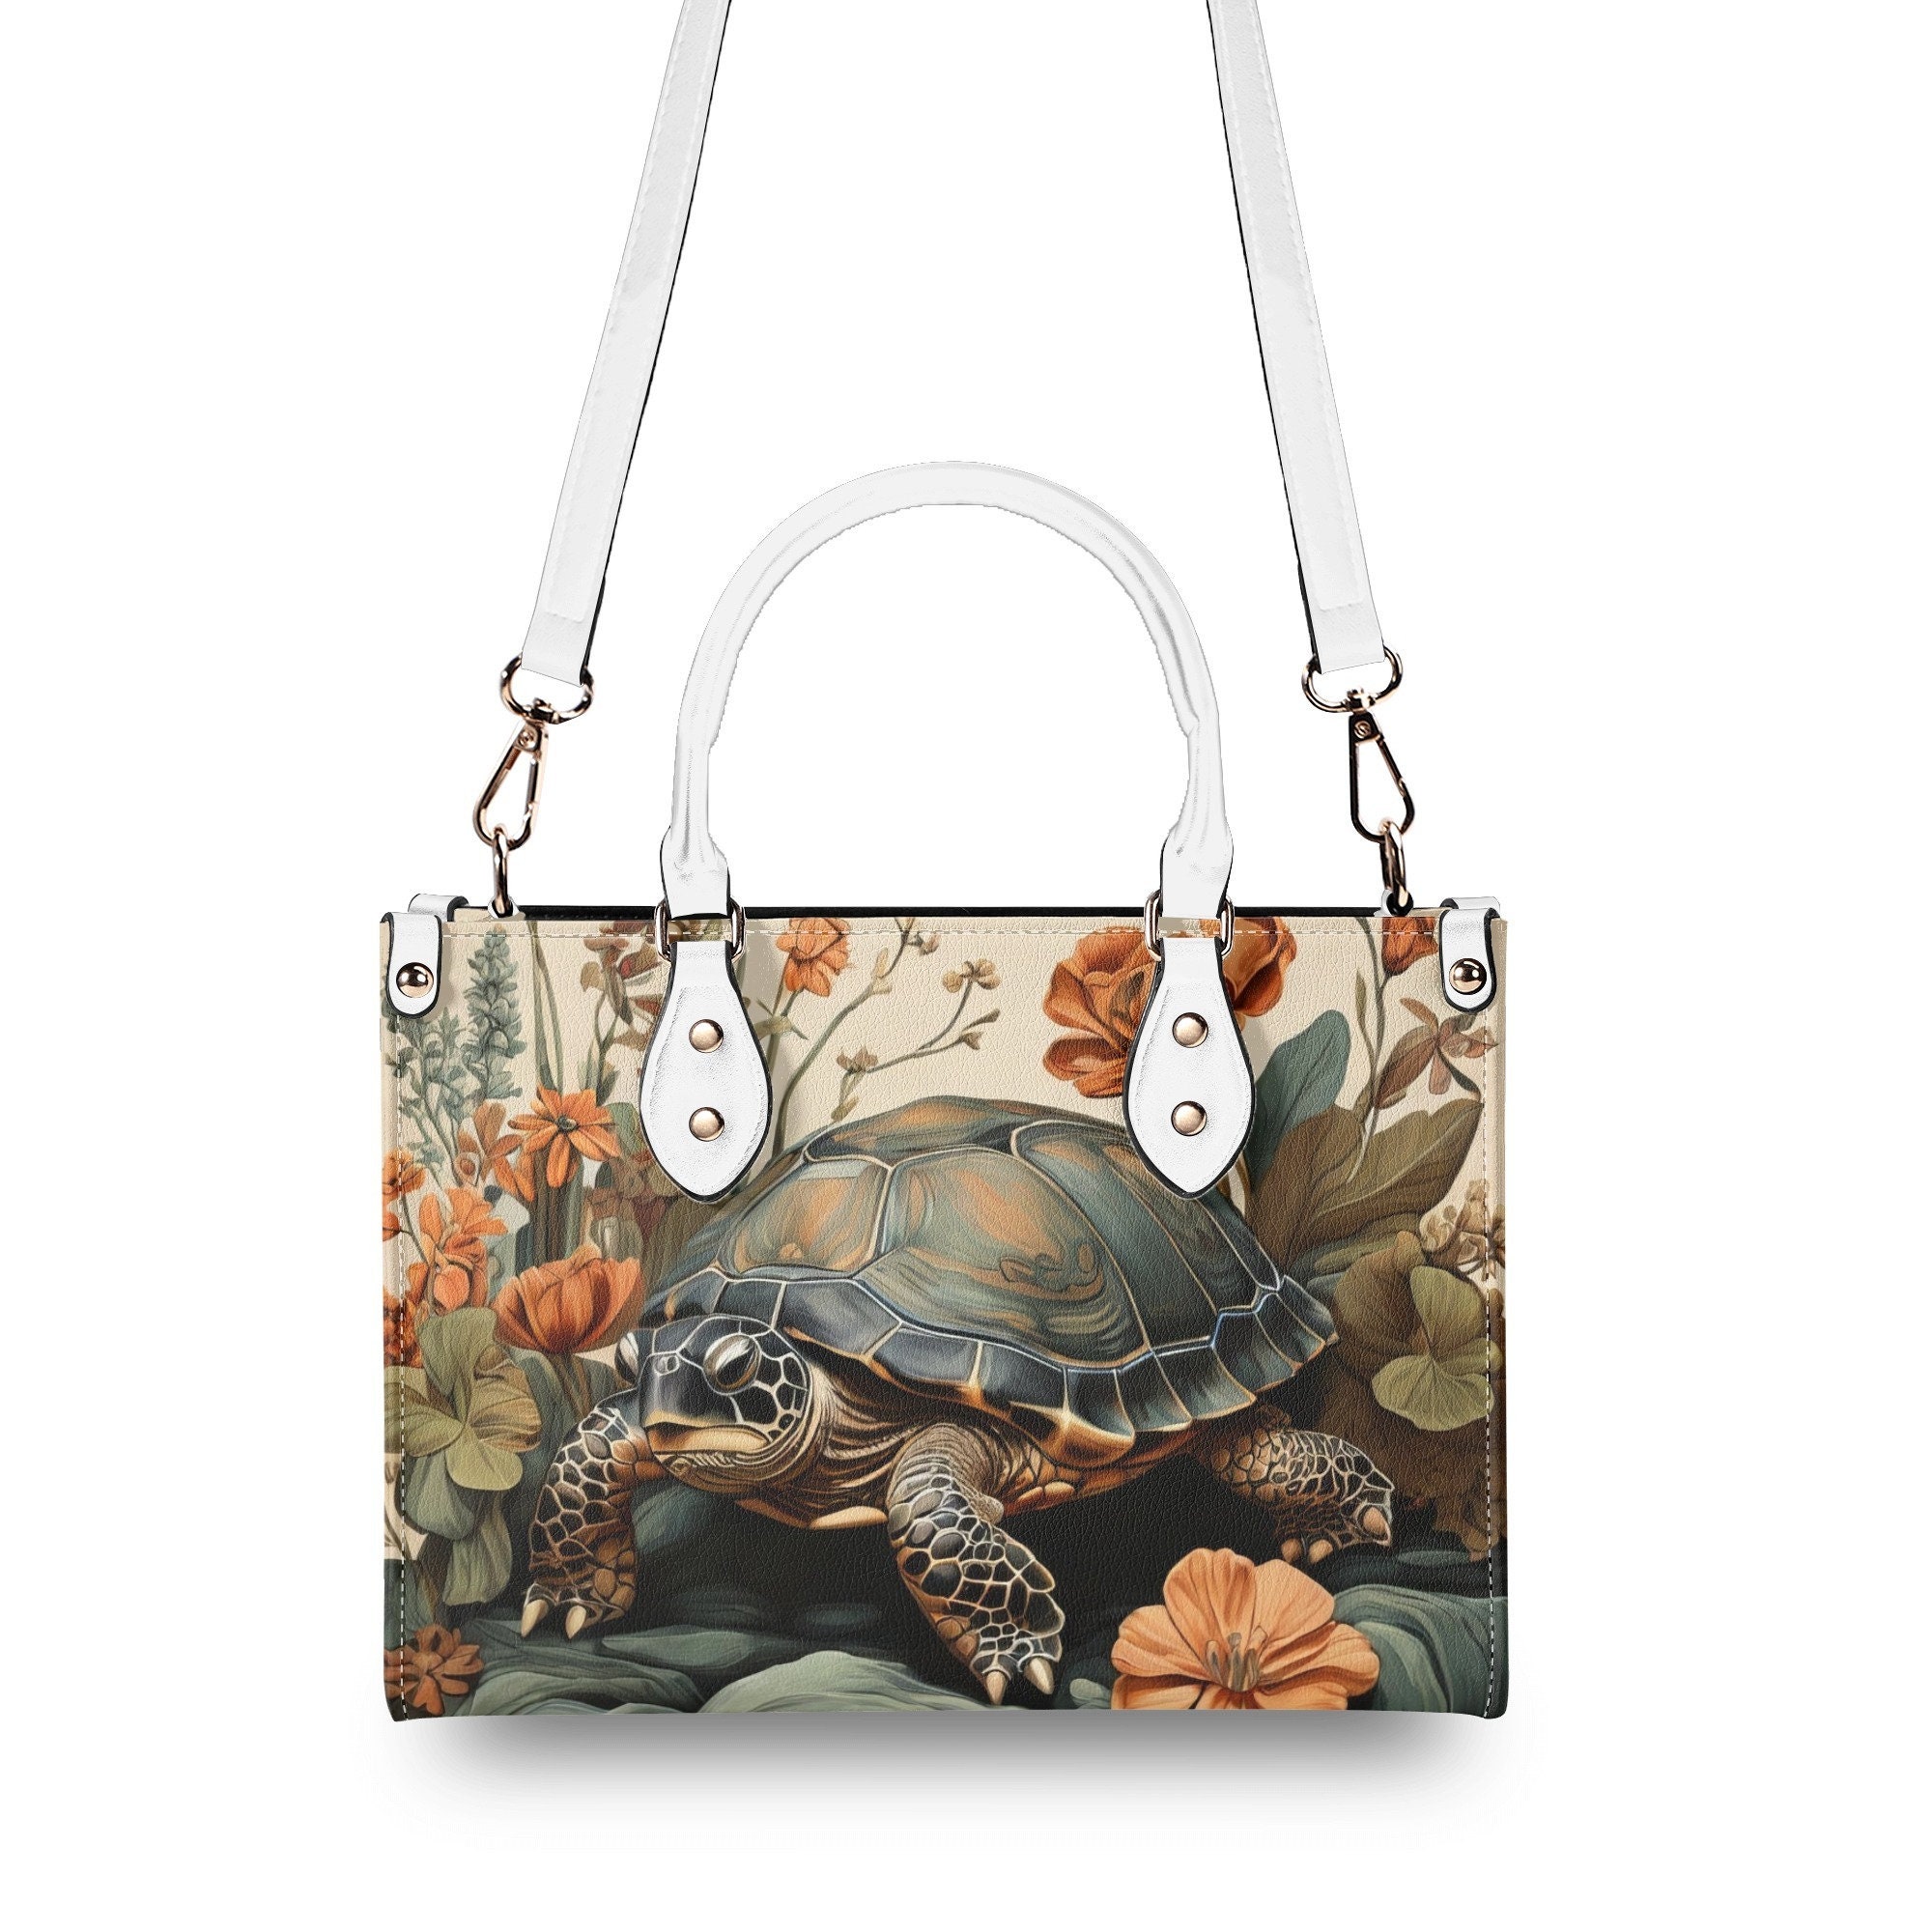 Turtle Purse Handbag, Vegan Leather Bag, Forest Tortoise Shoulder Bag